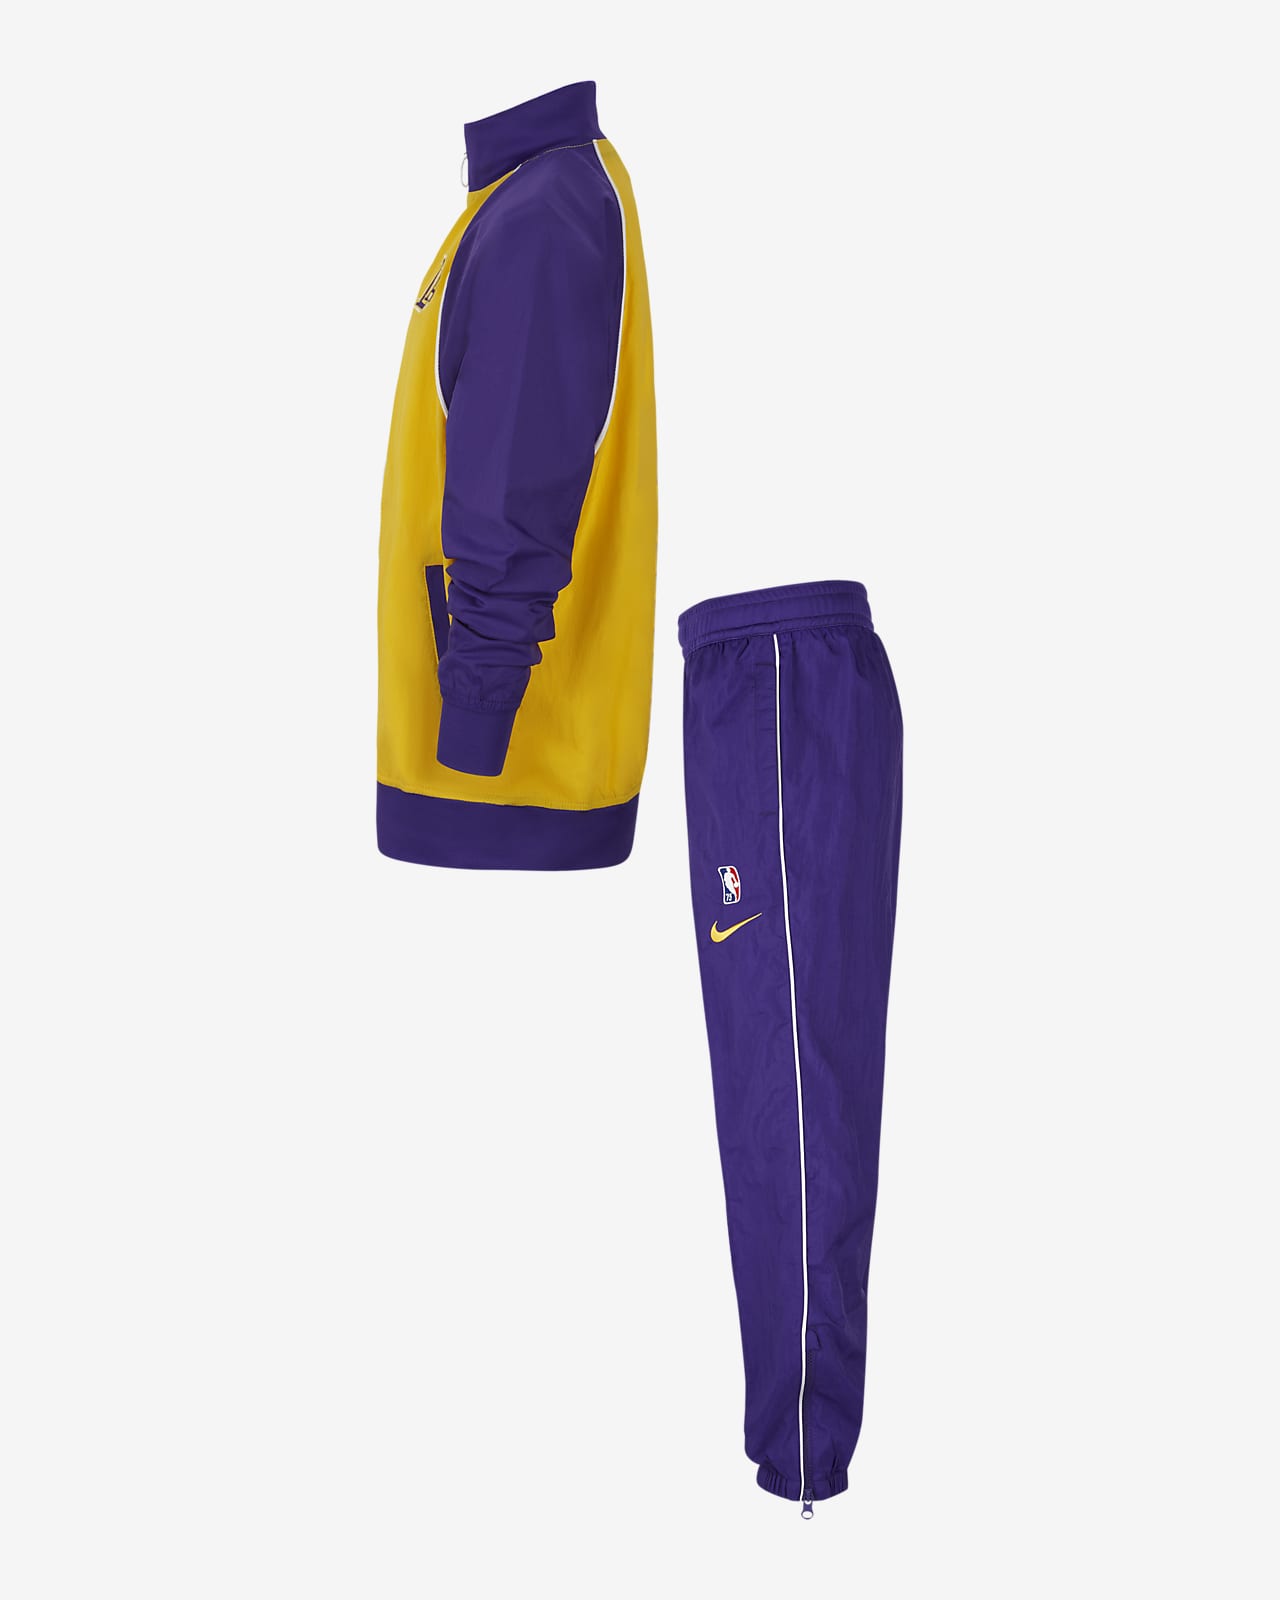 Angeles Lakers Courtside Chándal Nike - Niño/a. Nike